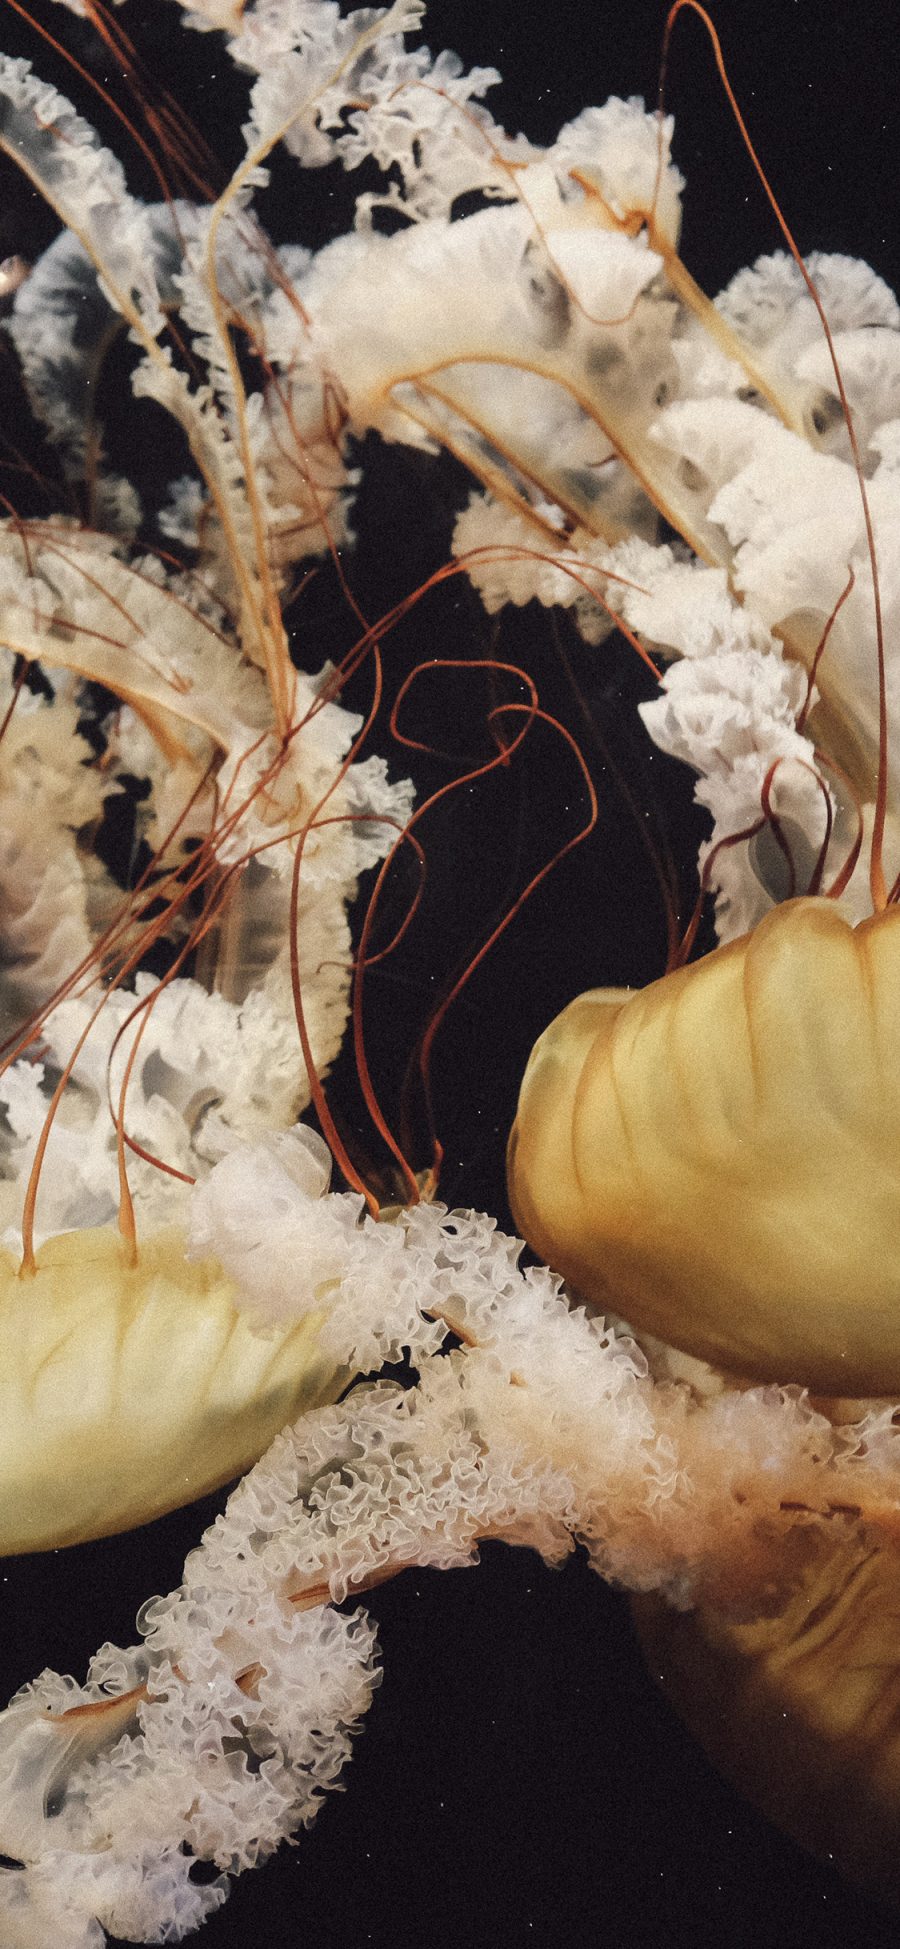 [2436×1125]水母 浮游 海洋生物 苹果手机壁纸图片